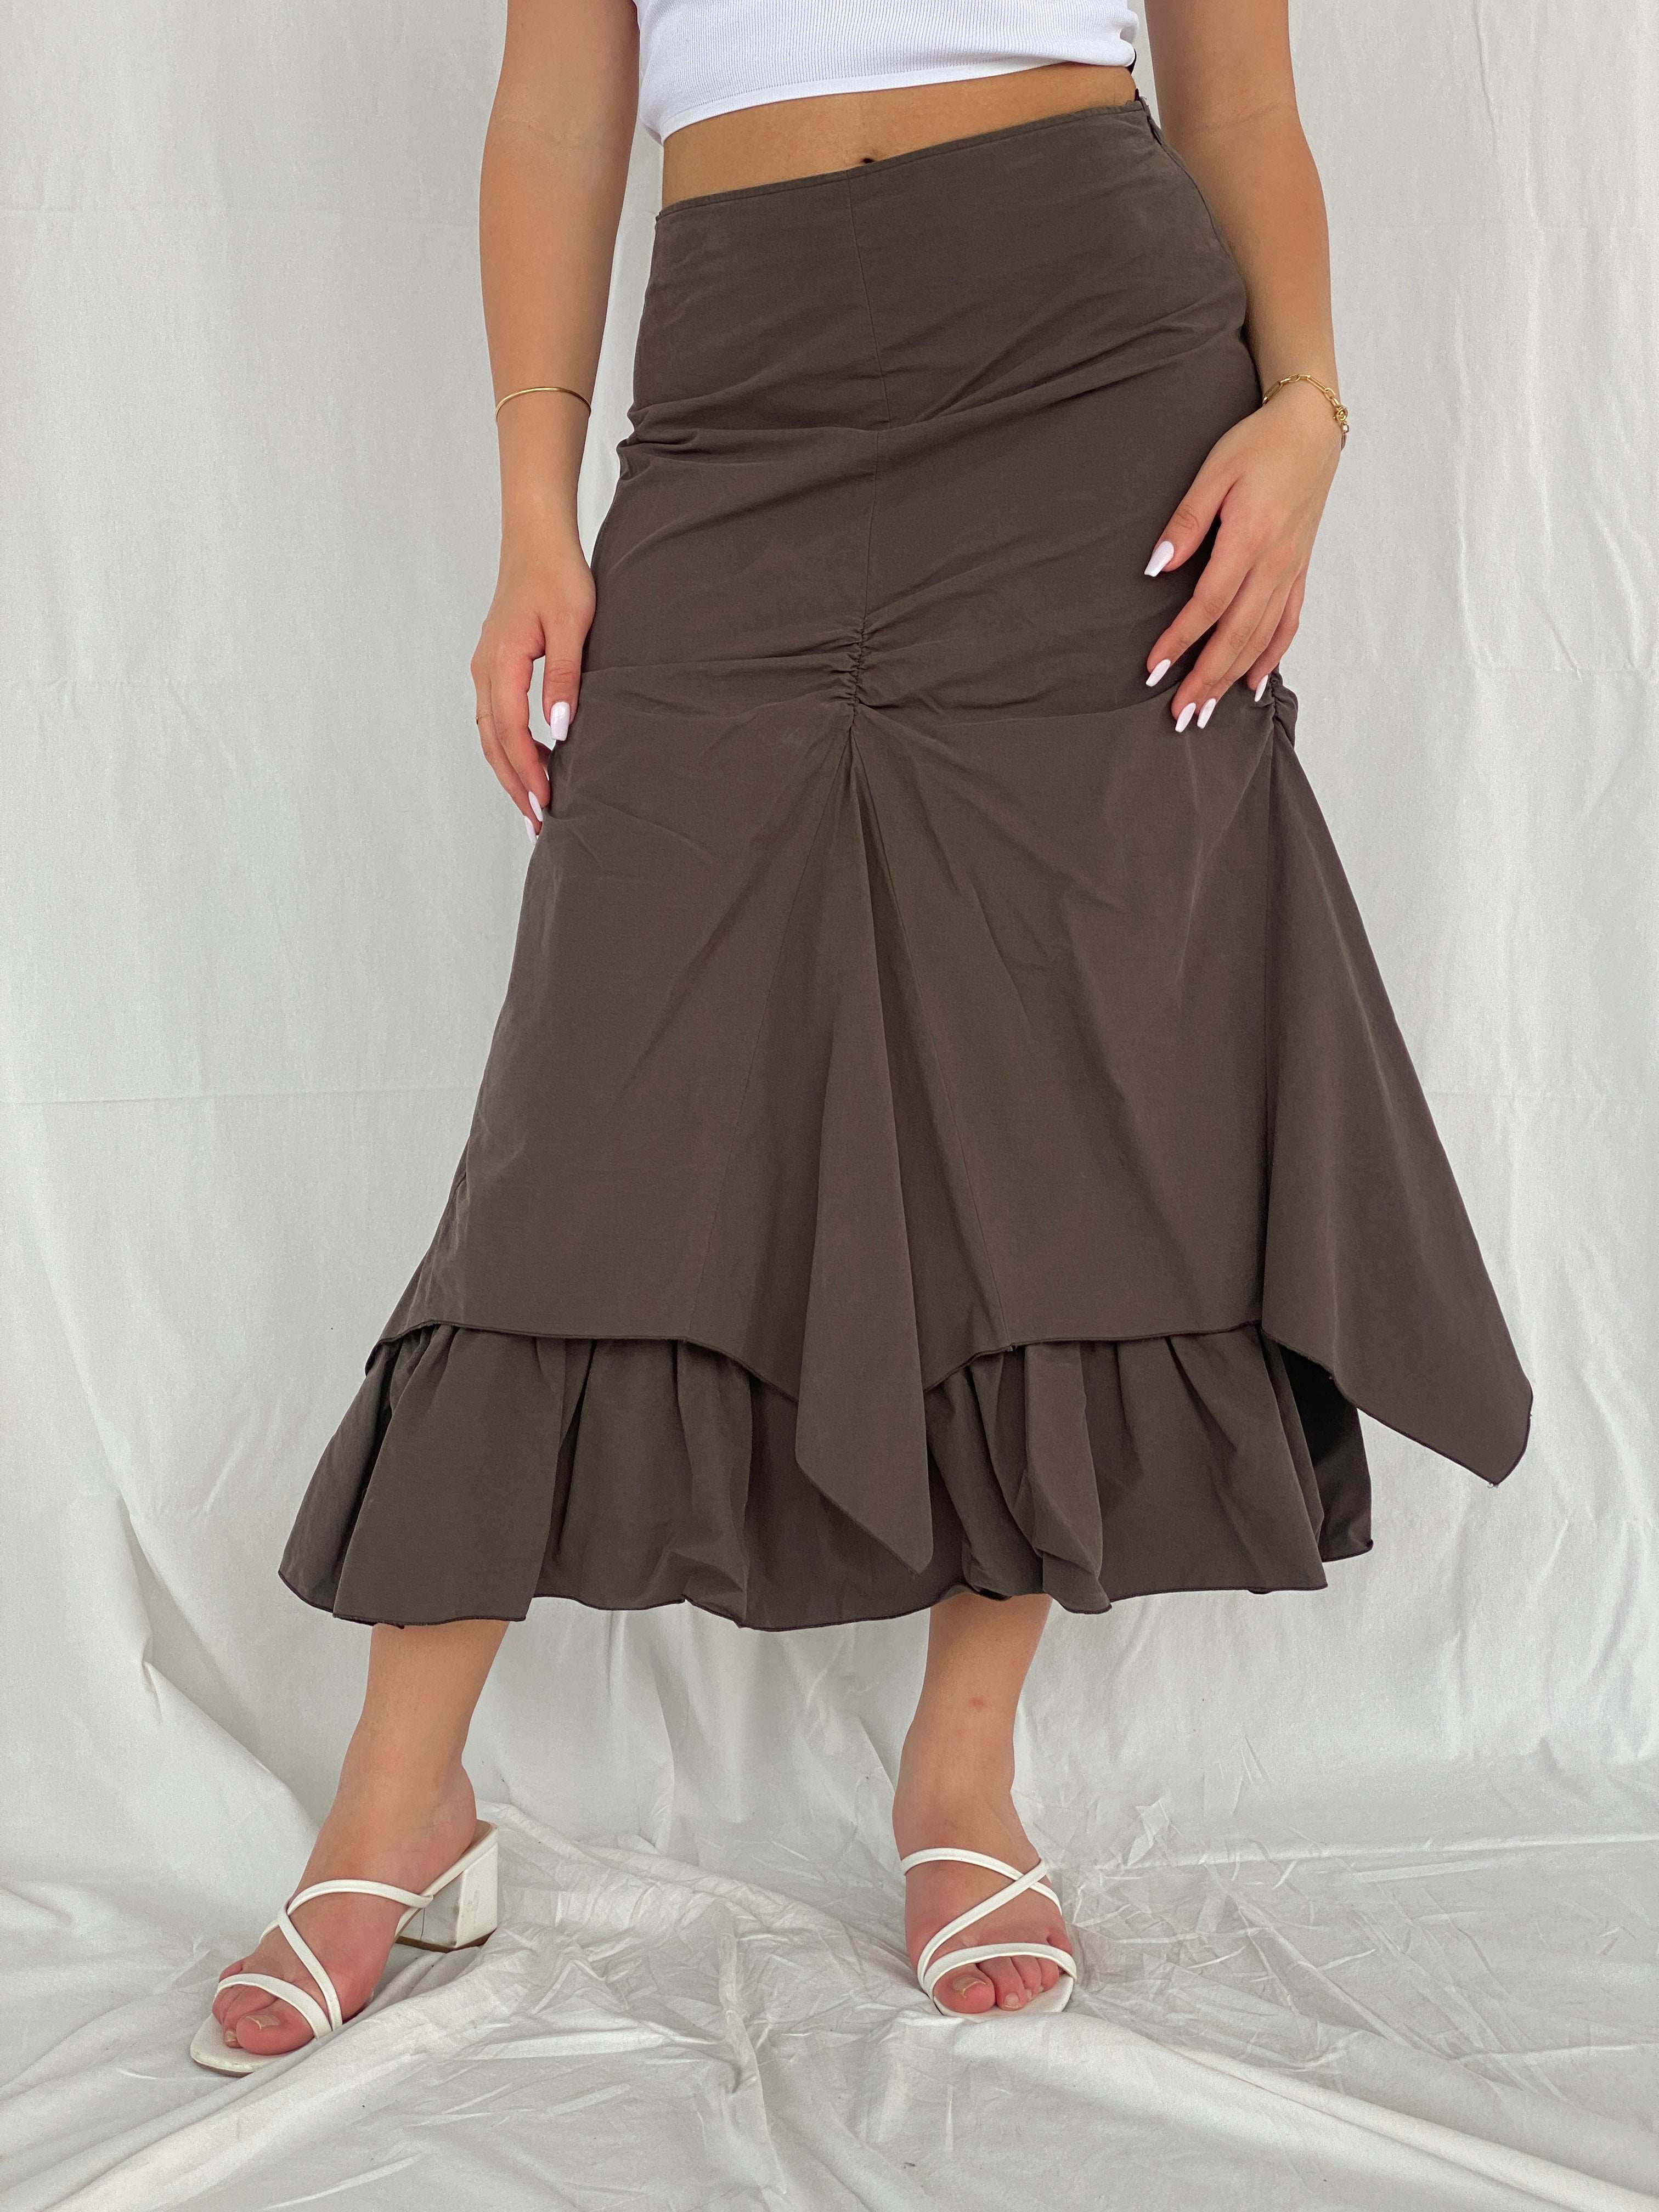 Insane Vintage 90s/00s Zaffiri Midi Ruched Skirt - Size M/L